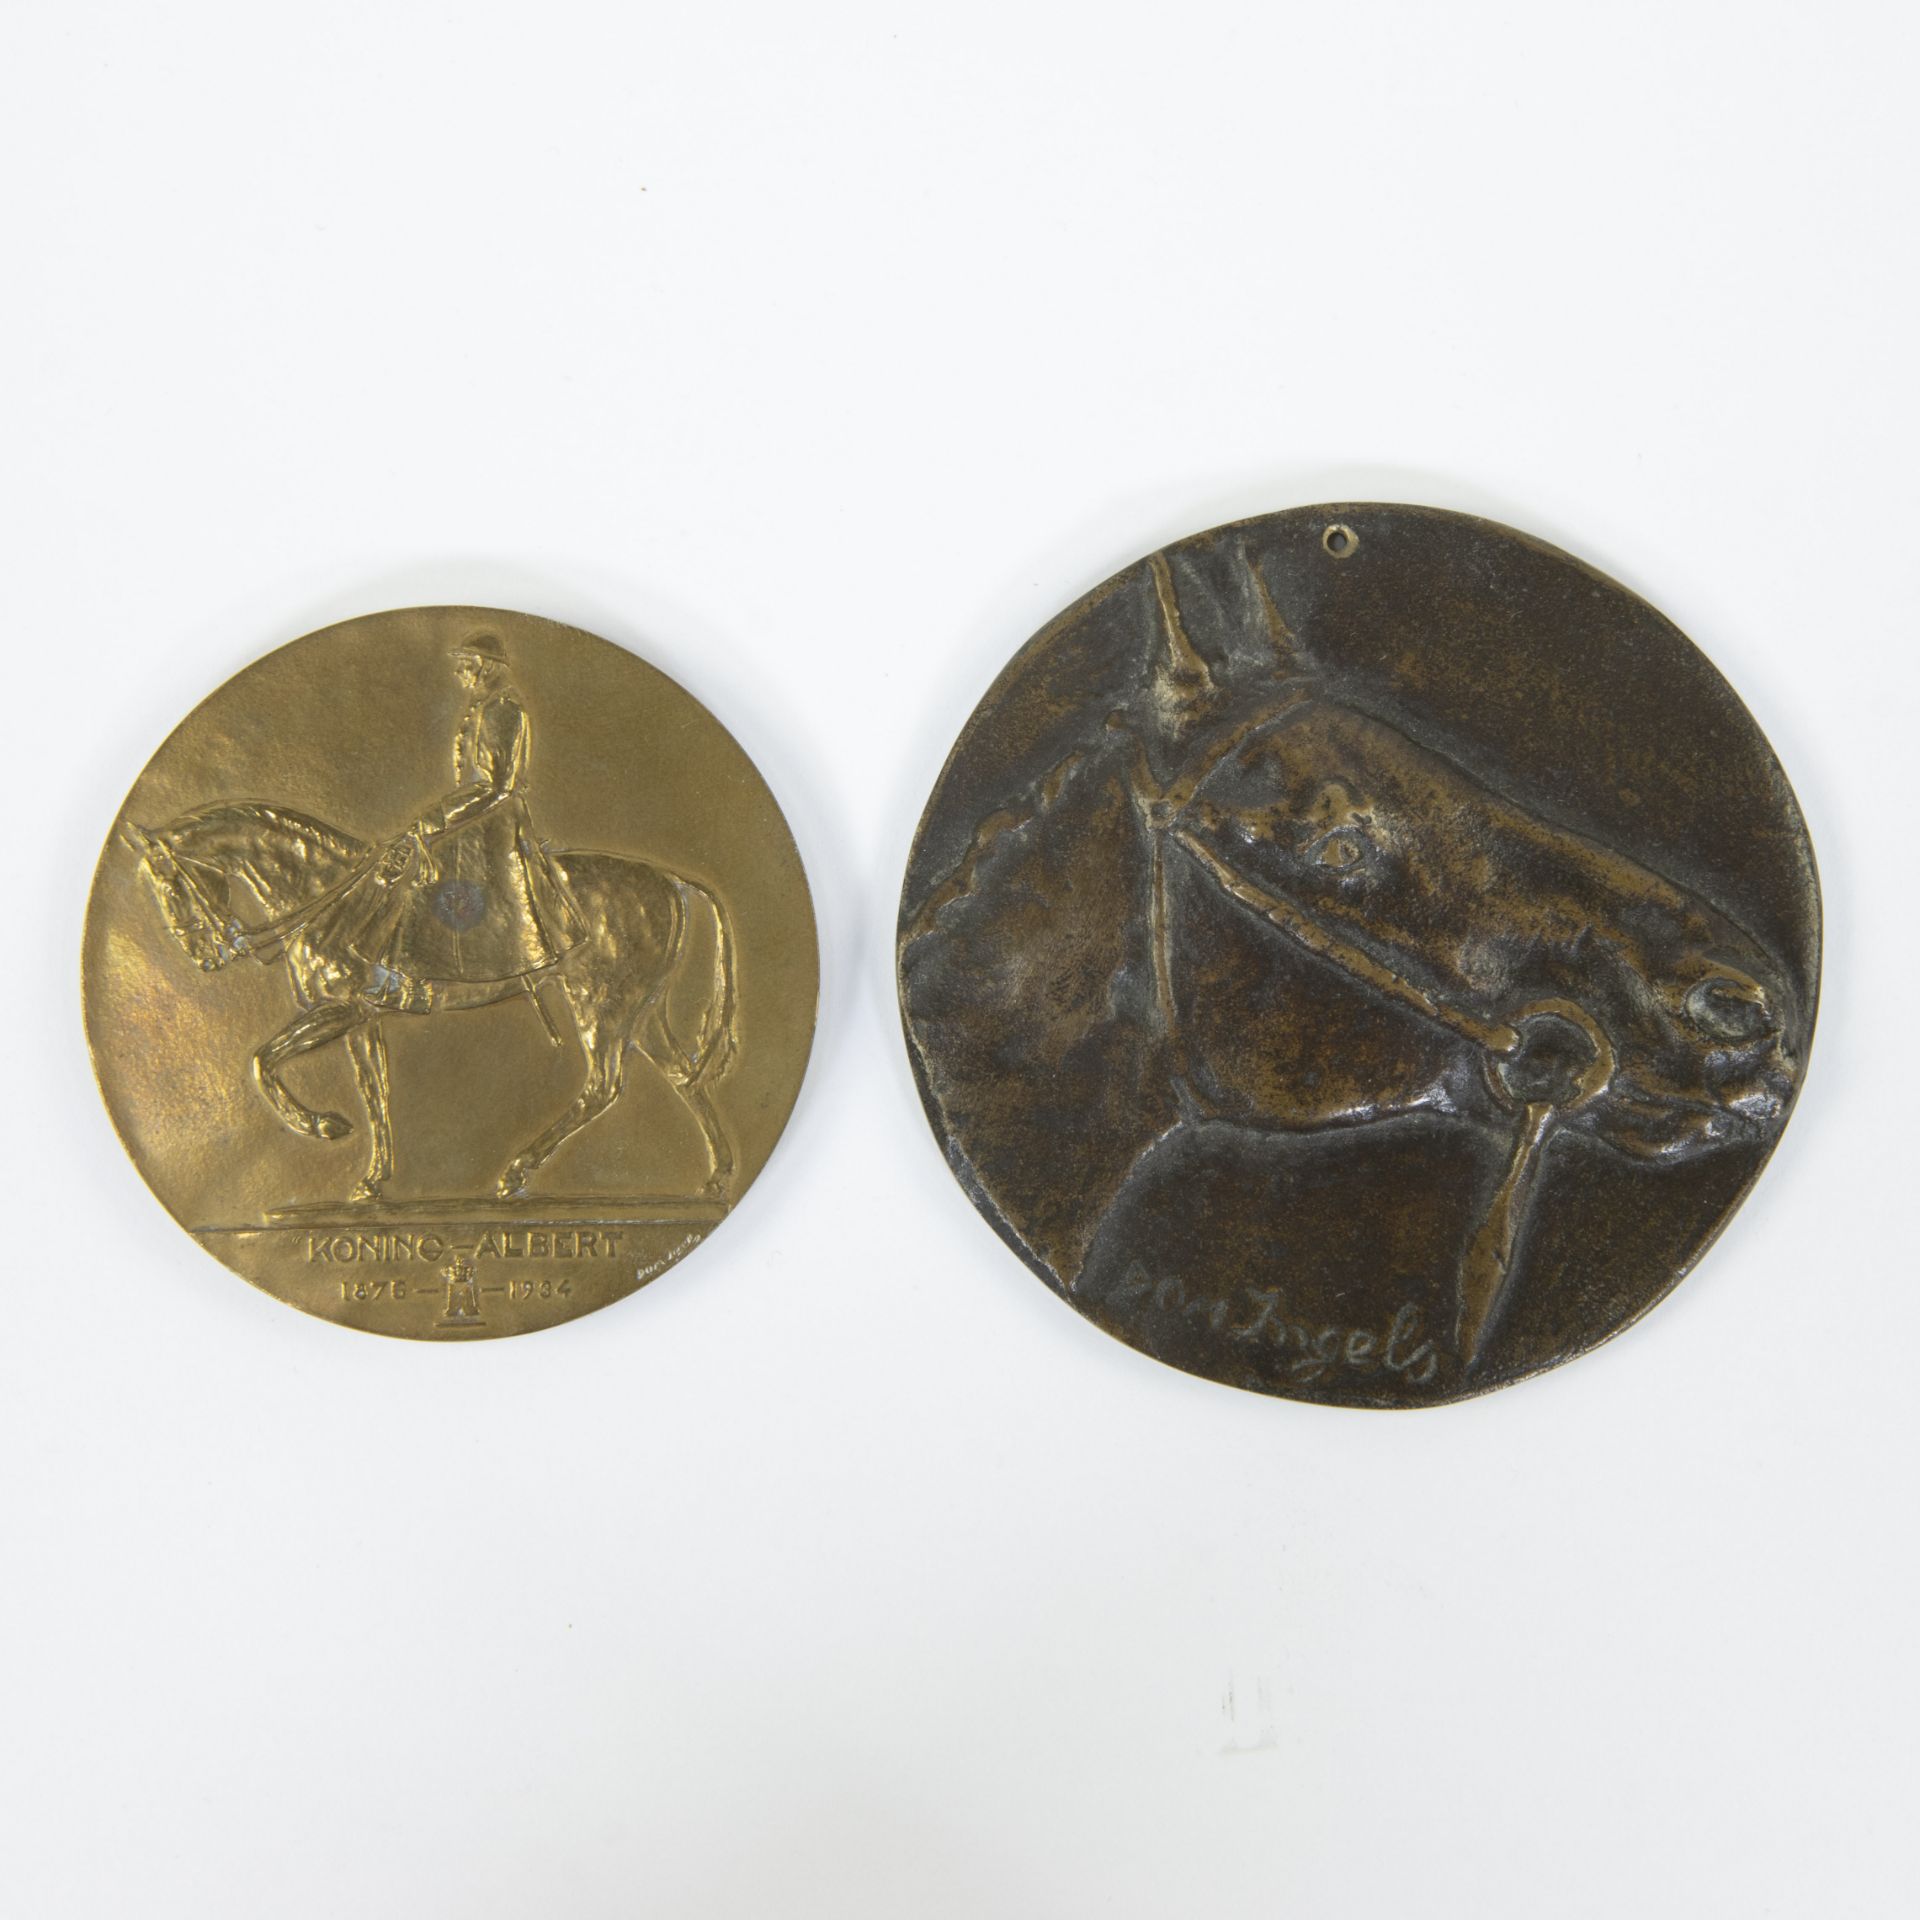 Domien INGELS (1881-1946), 2 bronze medals, signed